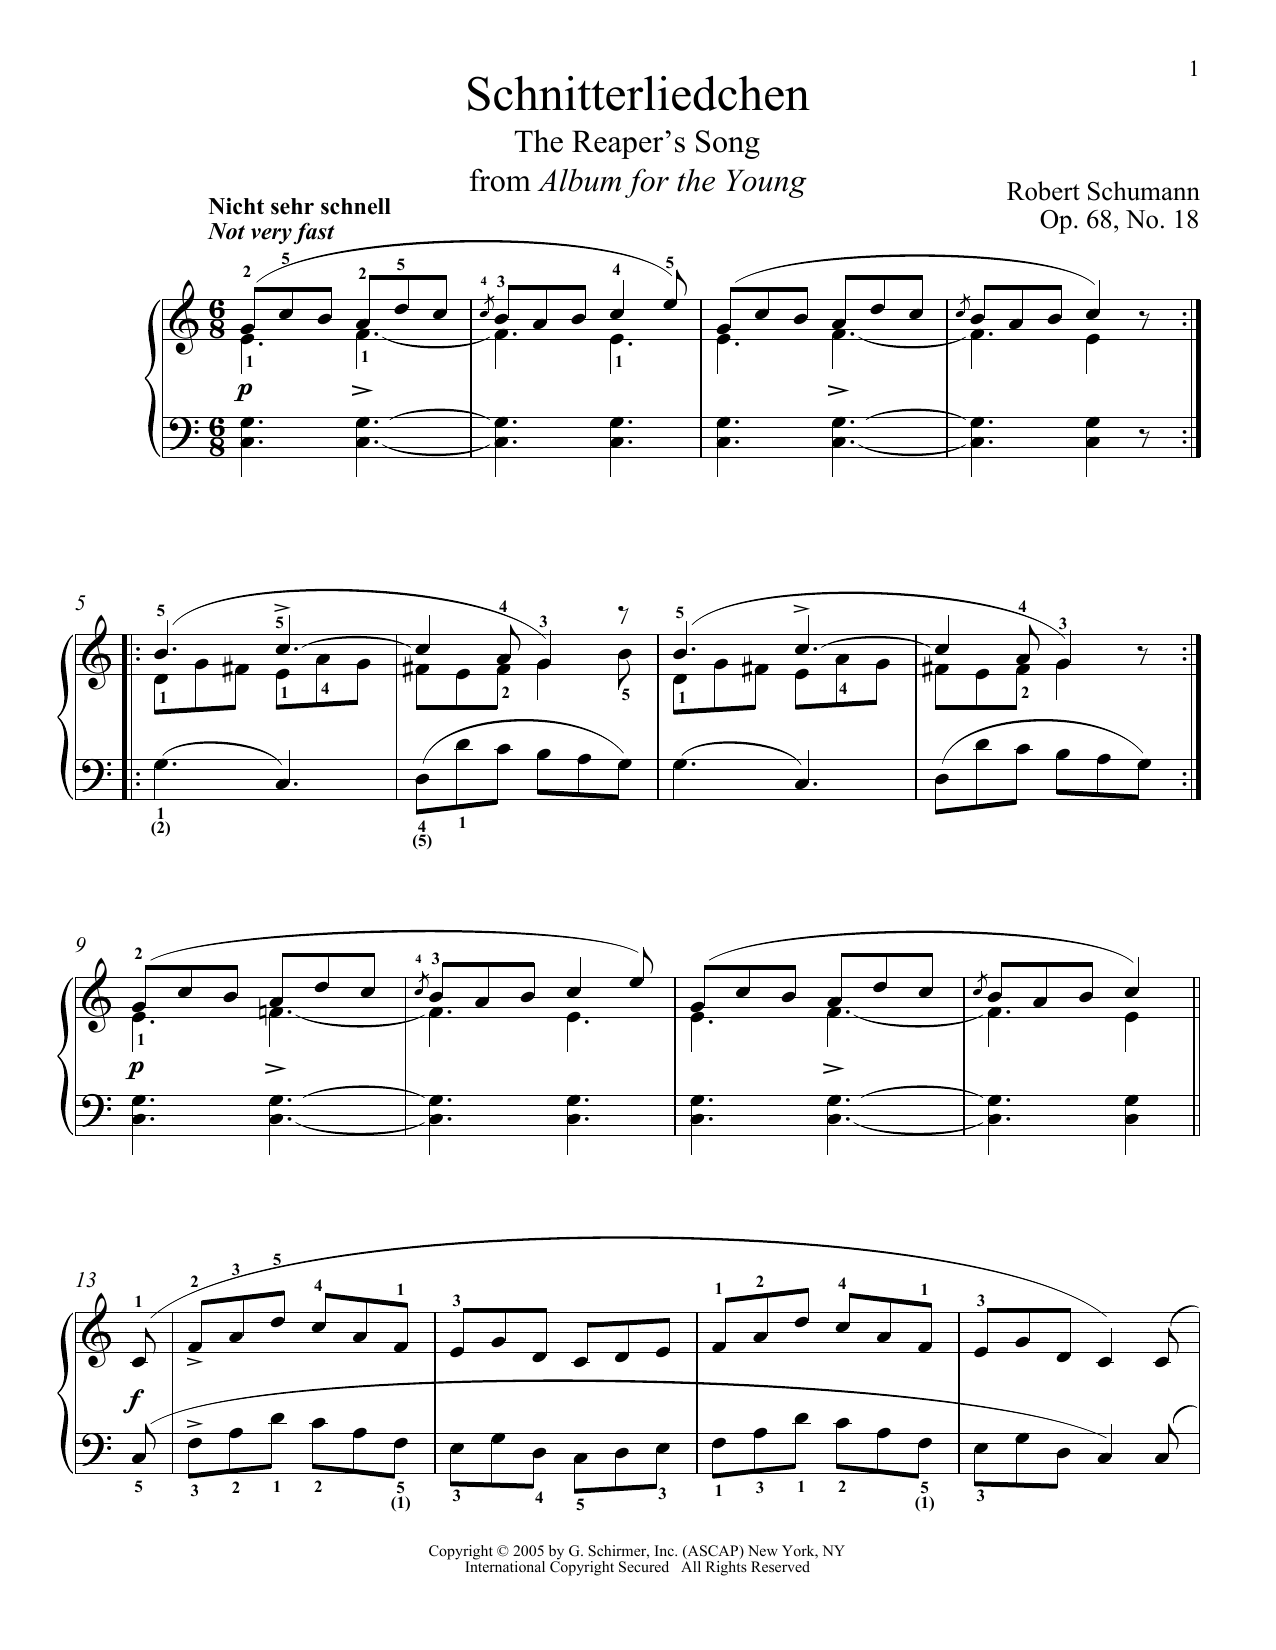 Download Robert Schumann The Reaper's Song, Op. 68, No. 18 (Schn Sheet Music